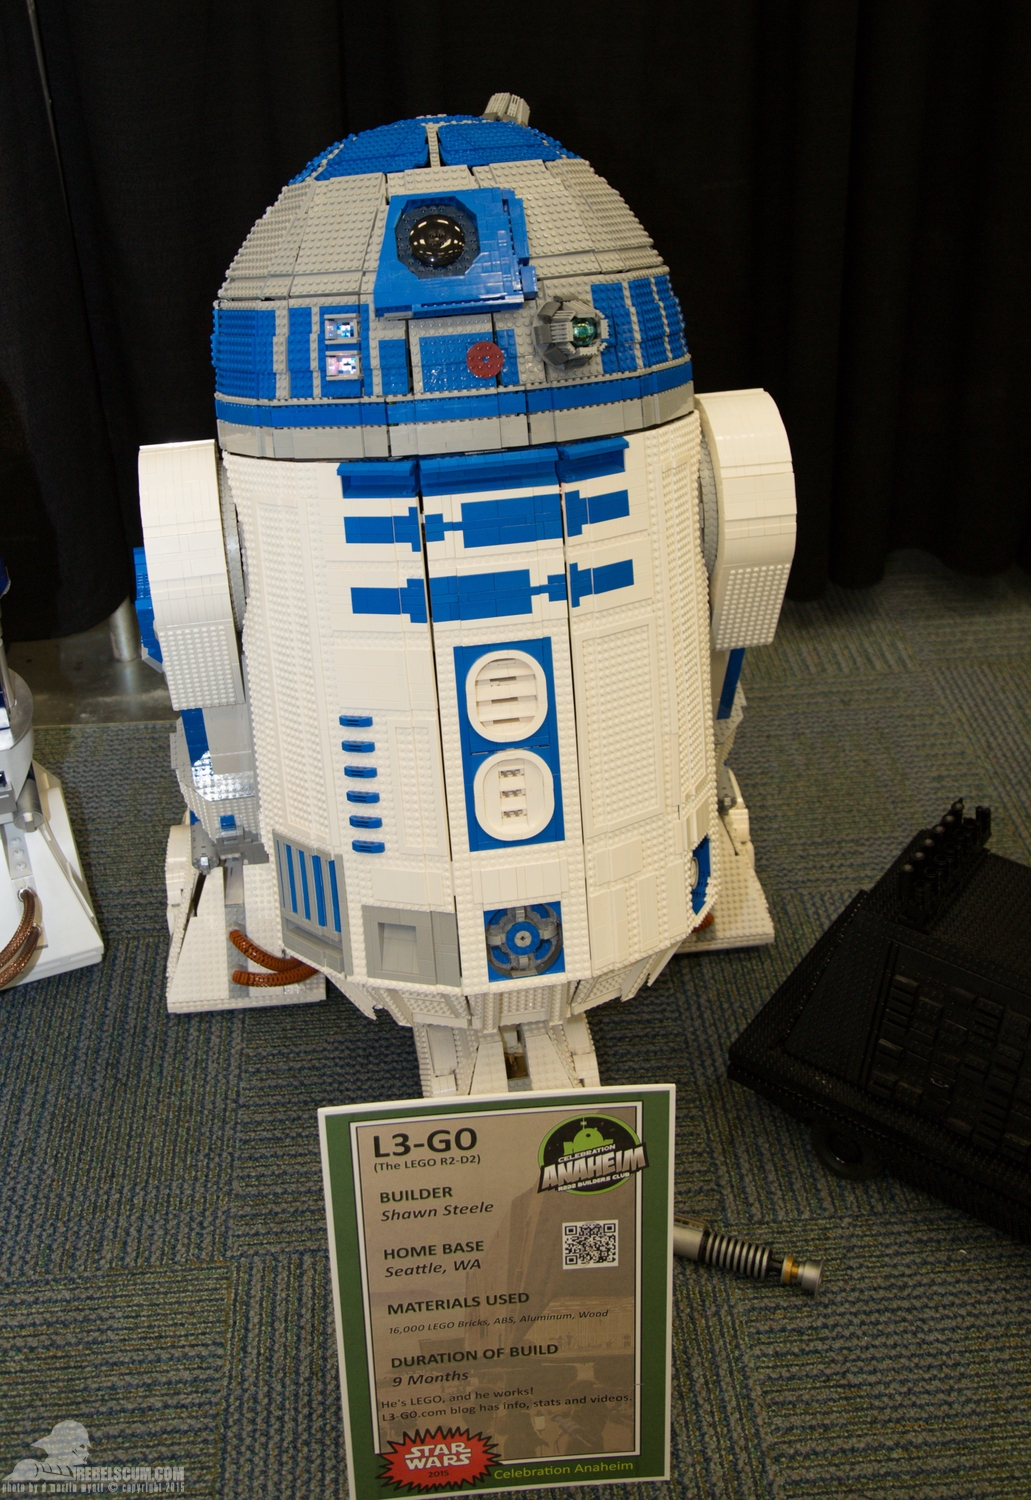 Star-Wars-Celebration-Anaheim-2015-R2-Builders-057.jpg